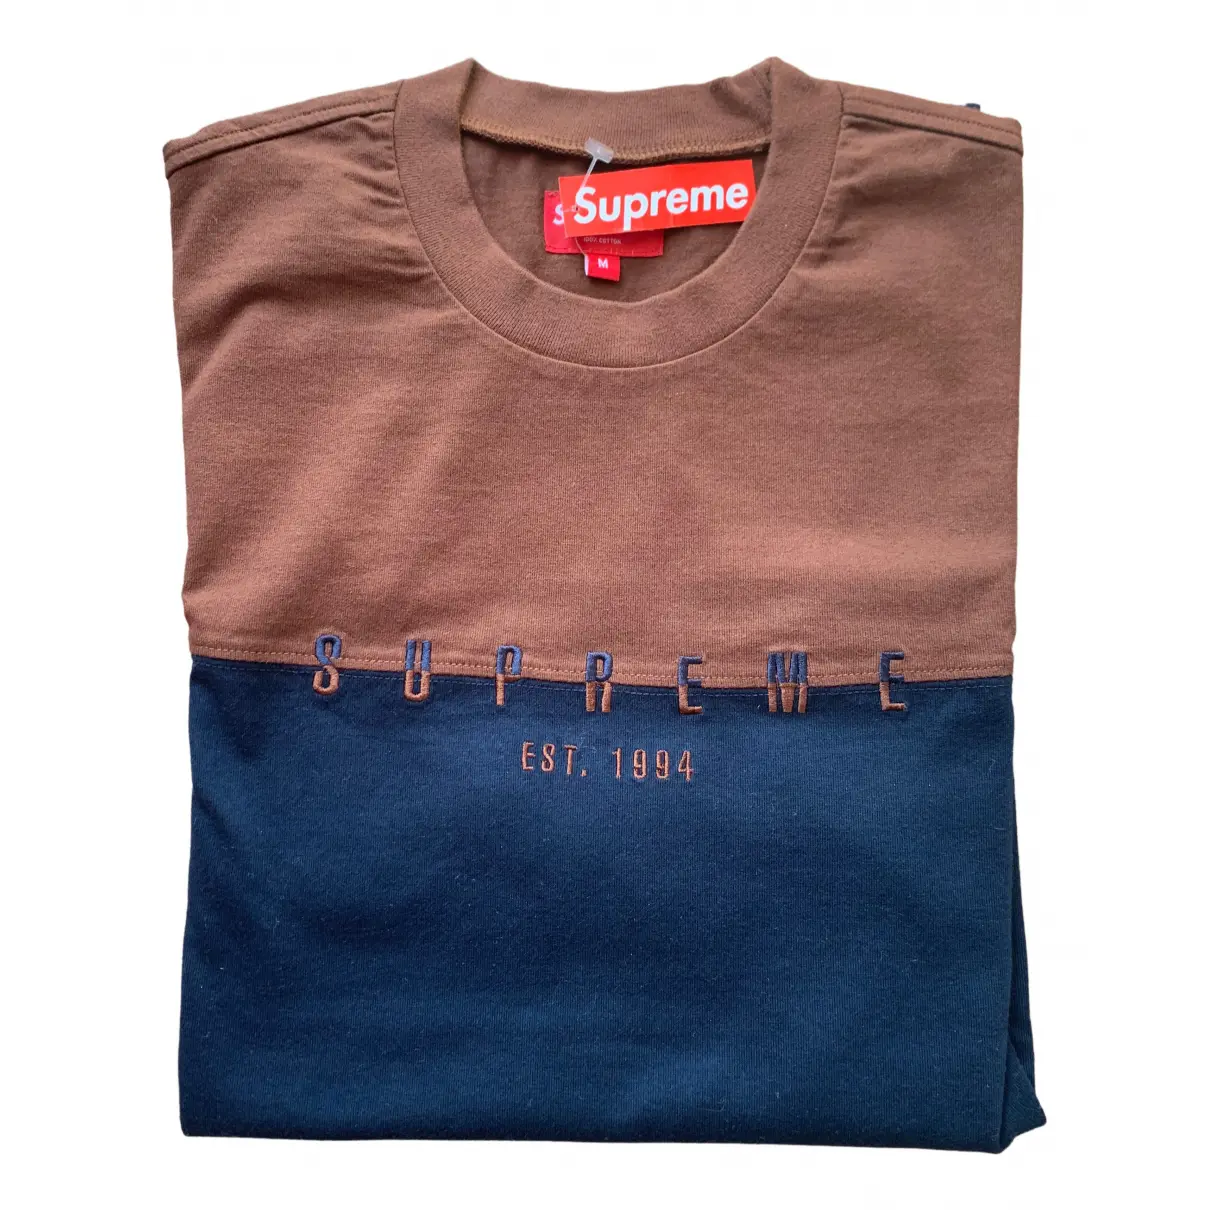 Buy Supreme Blue Cotton T-shirt online